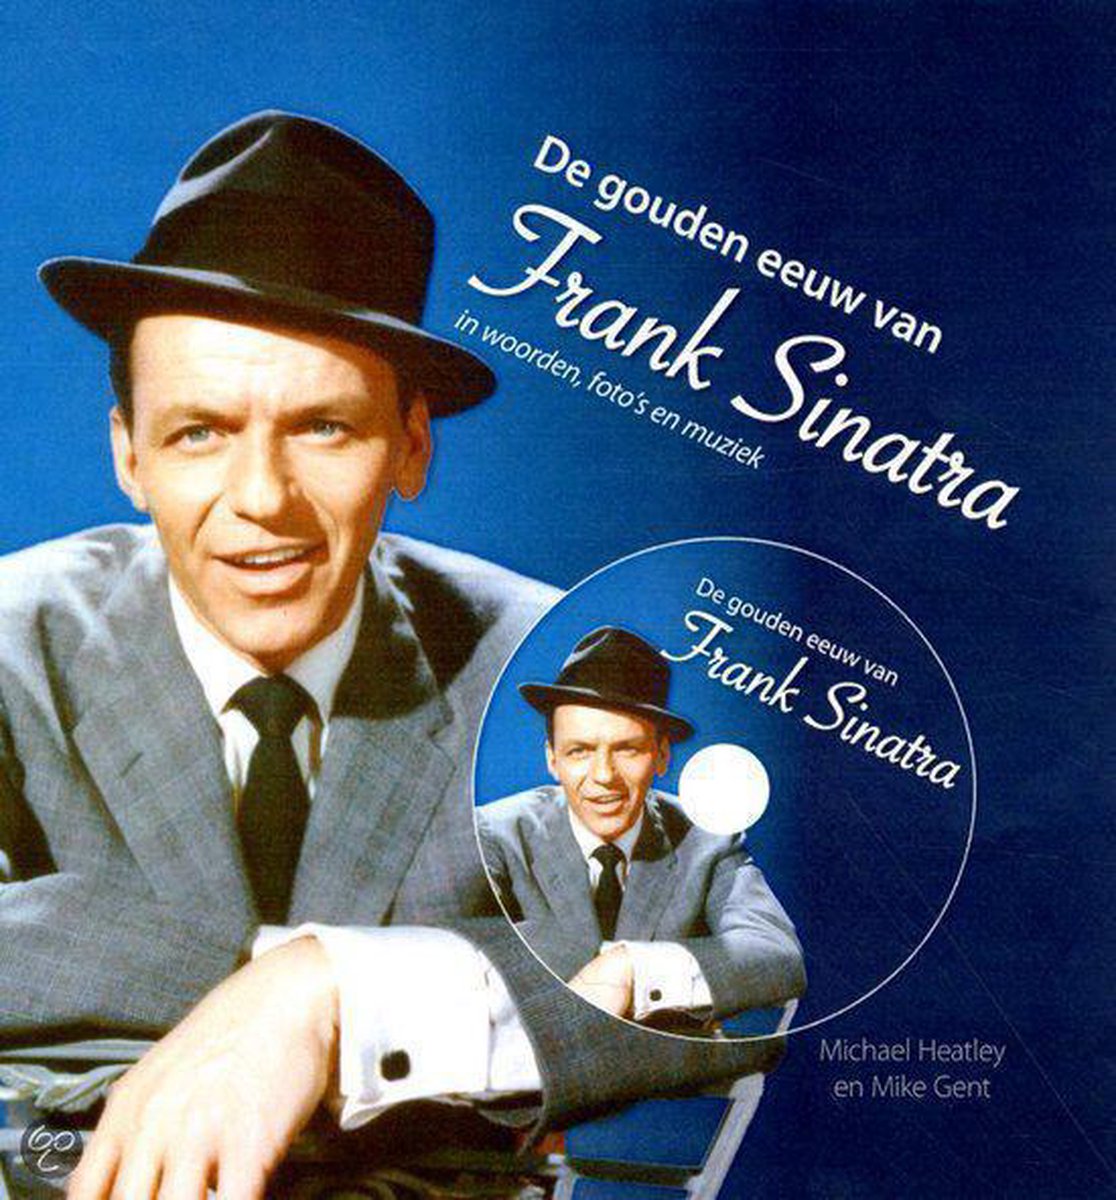 De gouden eeuw van Frank Sinatra